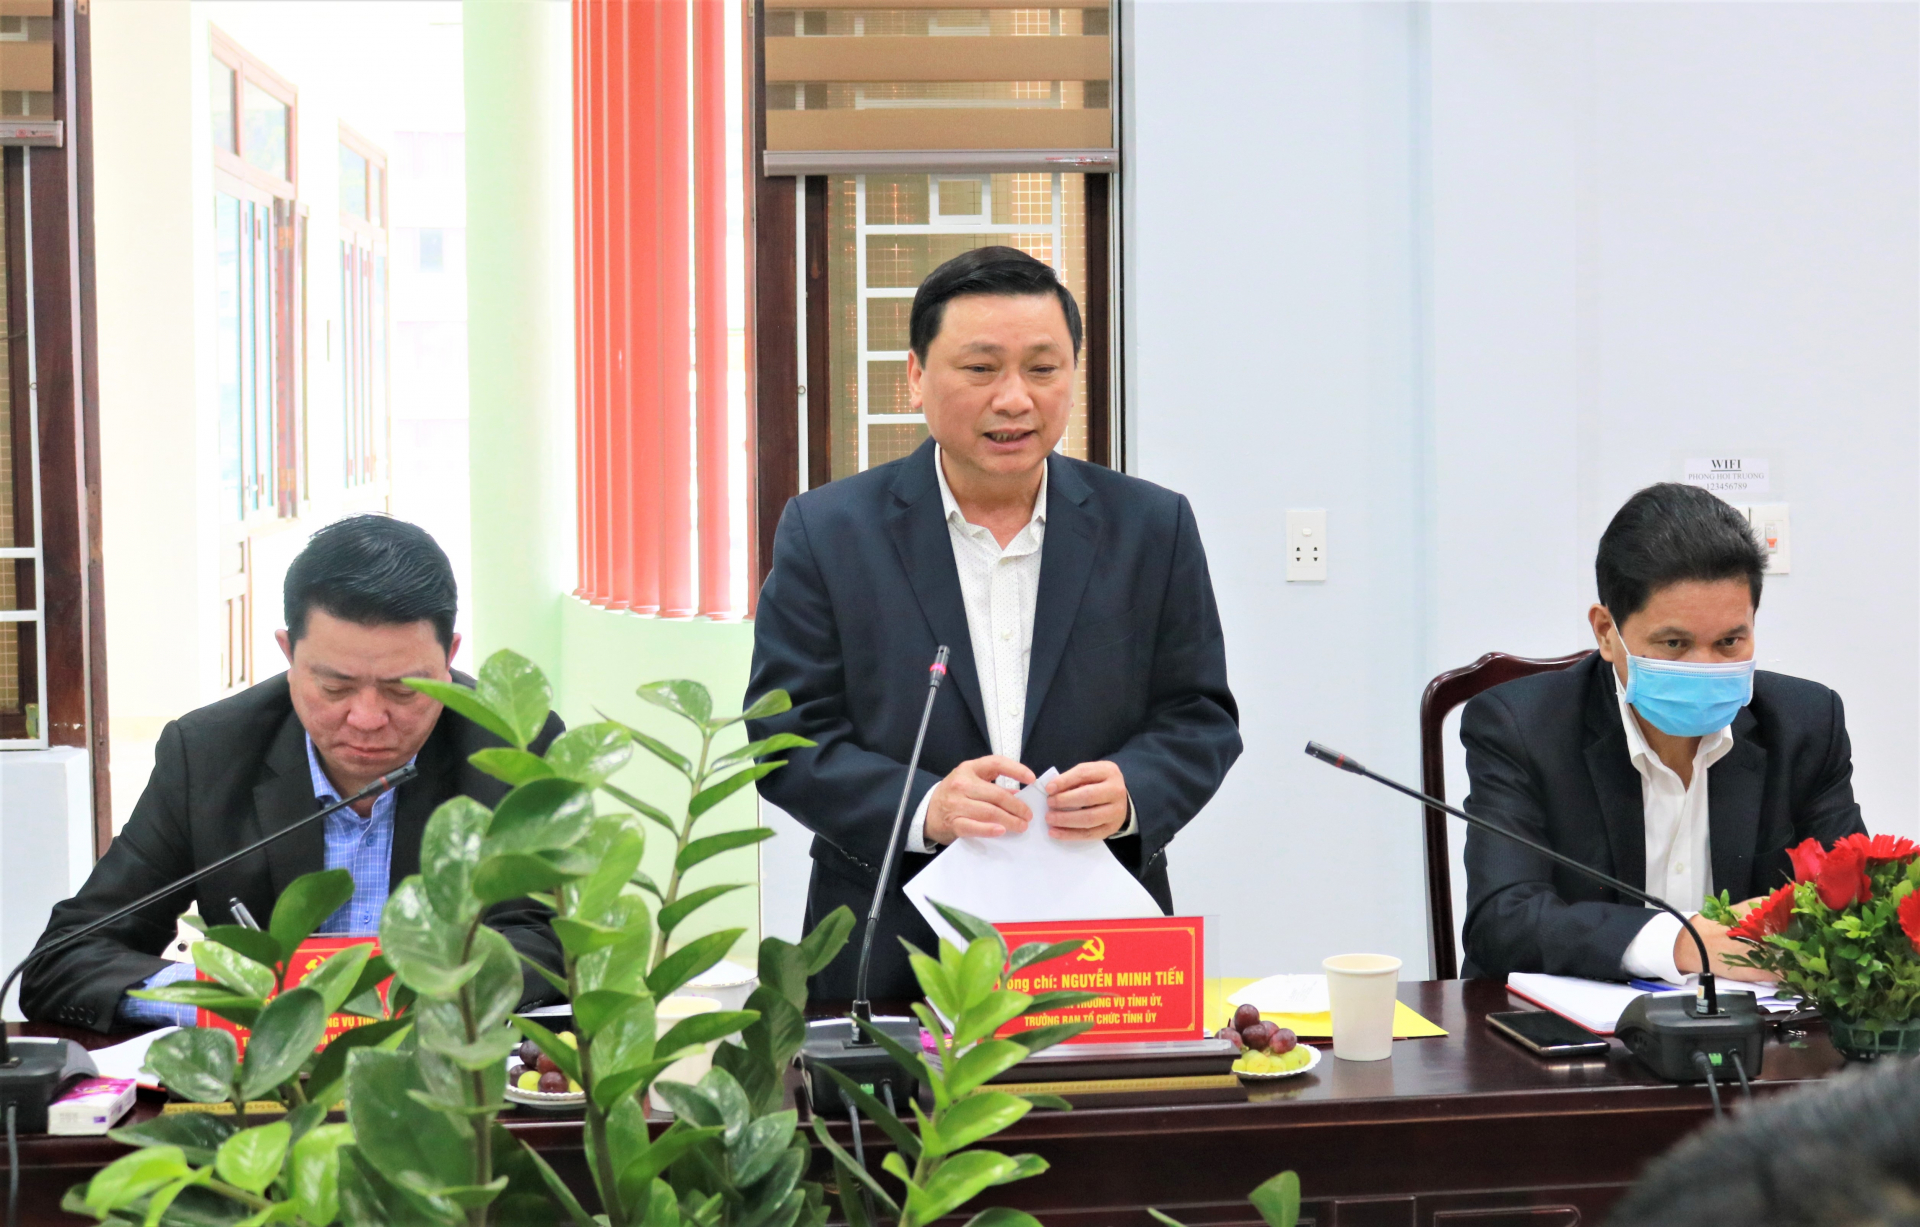 Trưởng Ban Tổ chức Tỉnh ủy Nguyễn Minh Tiến đề nghị Đảng ủy Sở Xây dựng đặc biệt quan tâm nâng cao chất lượng sinh hoạt chi bộ, chất lượng đảng viên, lãnh đạo các chi bộ trực thuộc thực hiện tốt nhiệm vụ chính trị được giao.